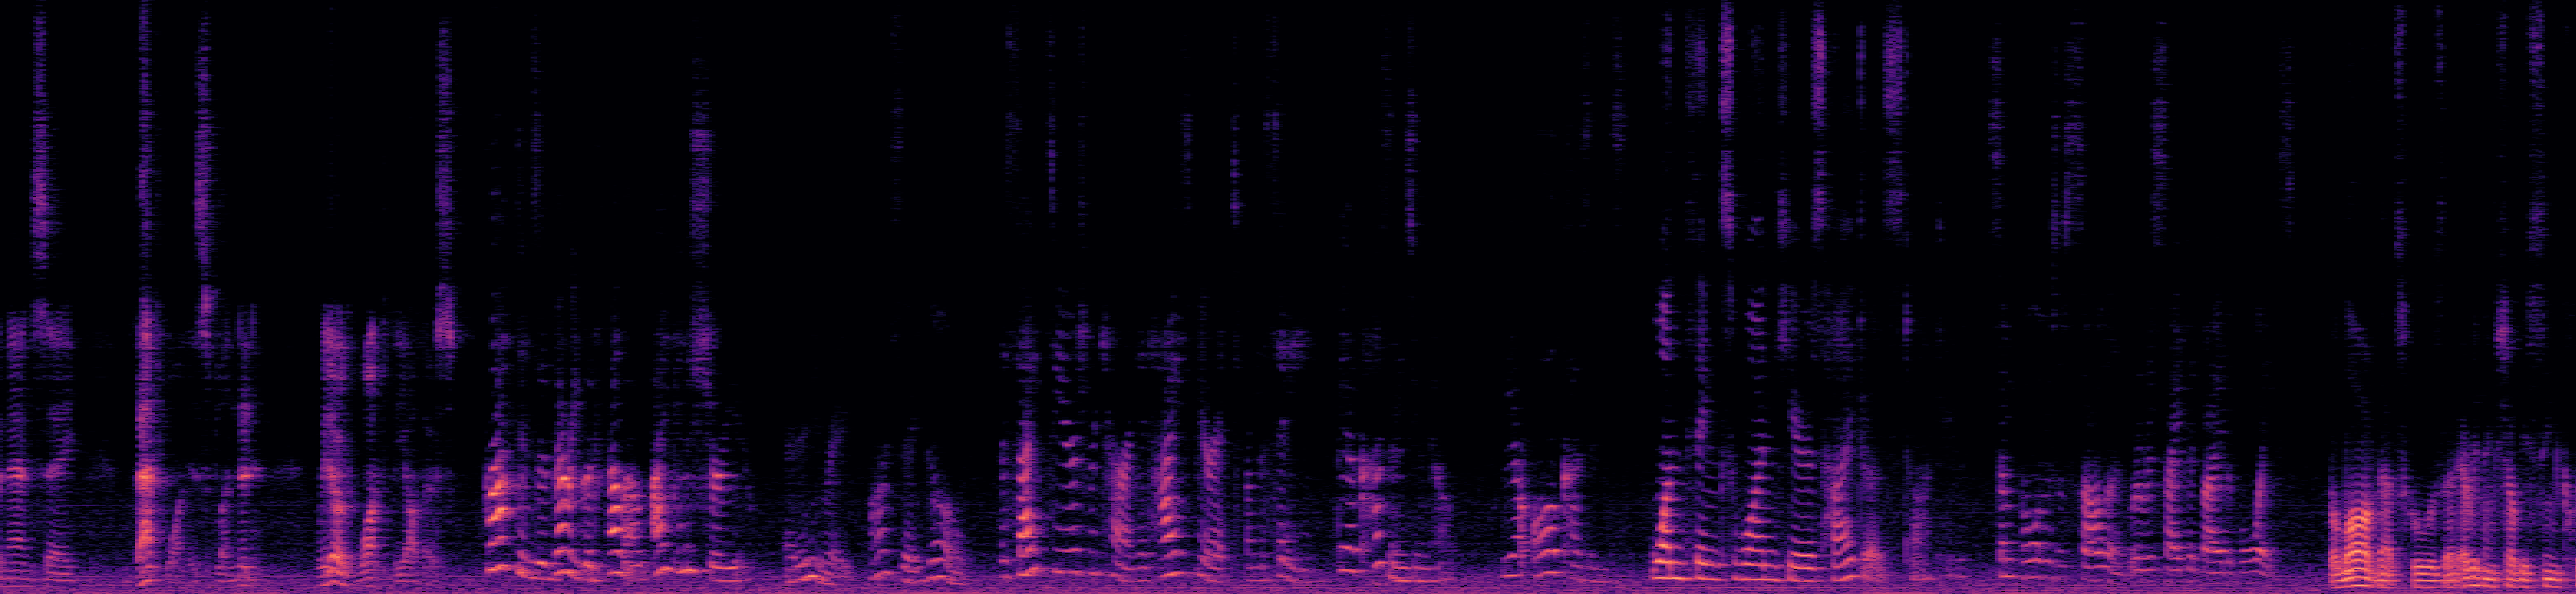 Spectrogram of Mixed Audio